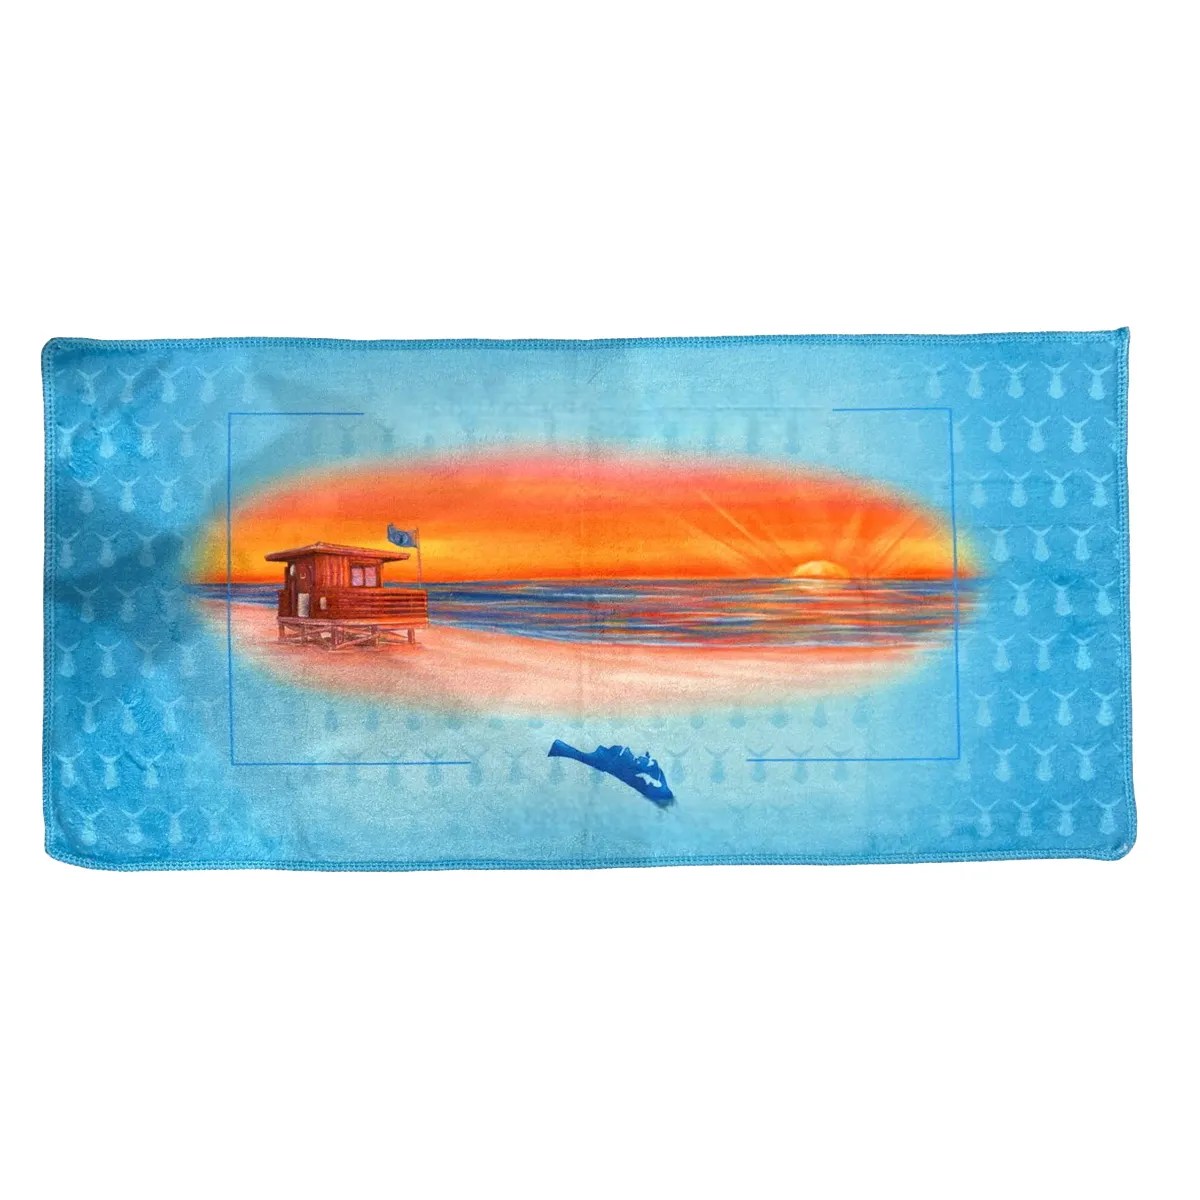 Serviette de plage en microfibre antibactérienne à prix abordable Serviette imprimée personnalisée en couleur non décolorée par le fabricant direct de serviettes de plage